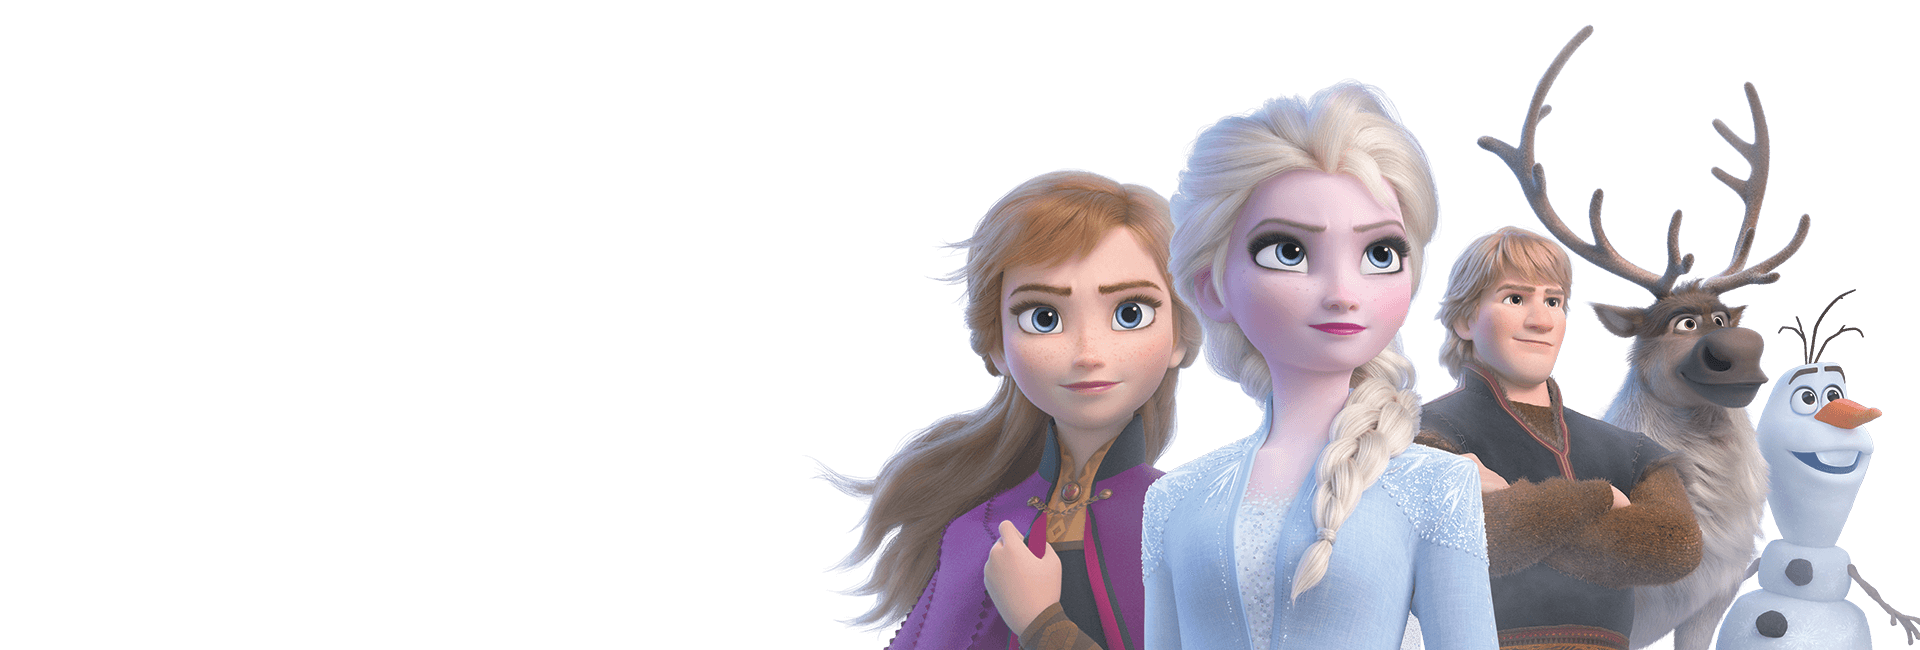 アナと雪の女王2キャラクター